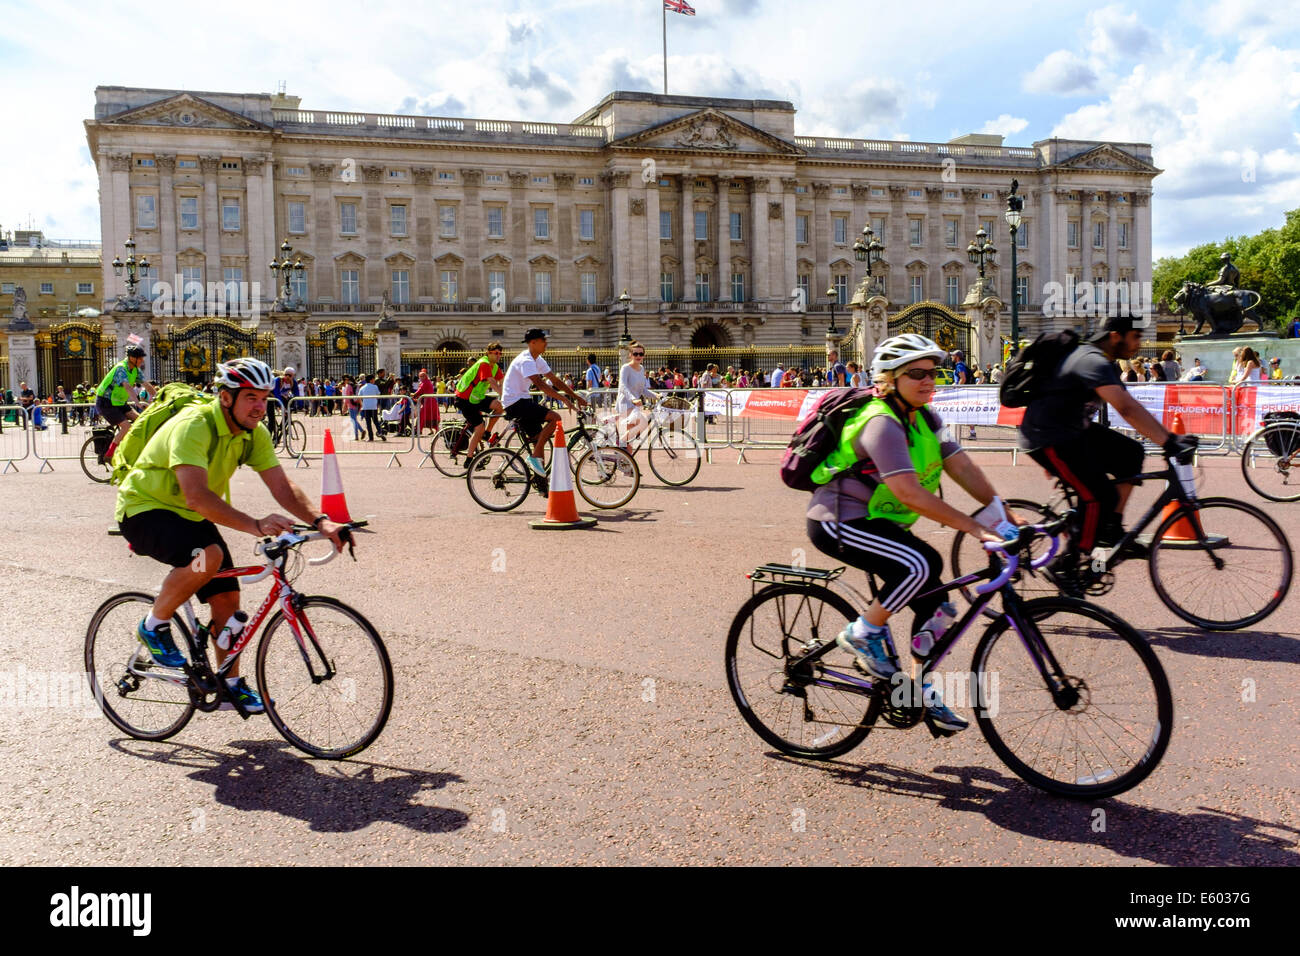 Les participants à la Prudential RideLondon événement Freecycle dans le centre de Londres depuis le cycle de Buckingham Palace Banque D'Images